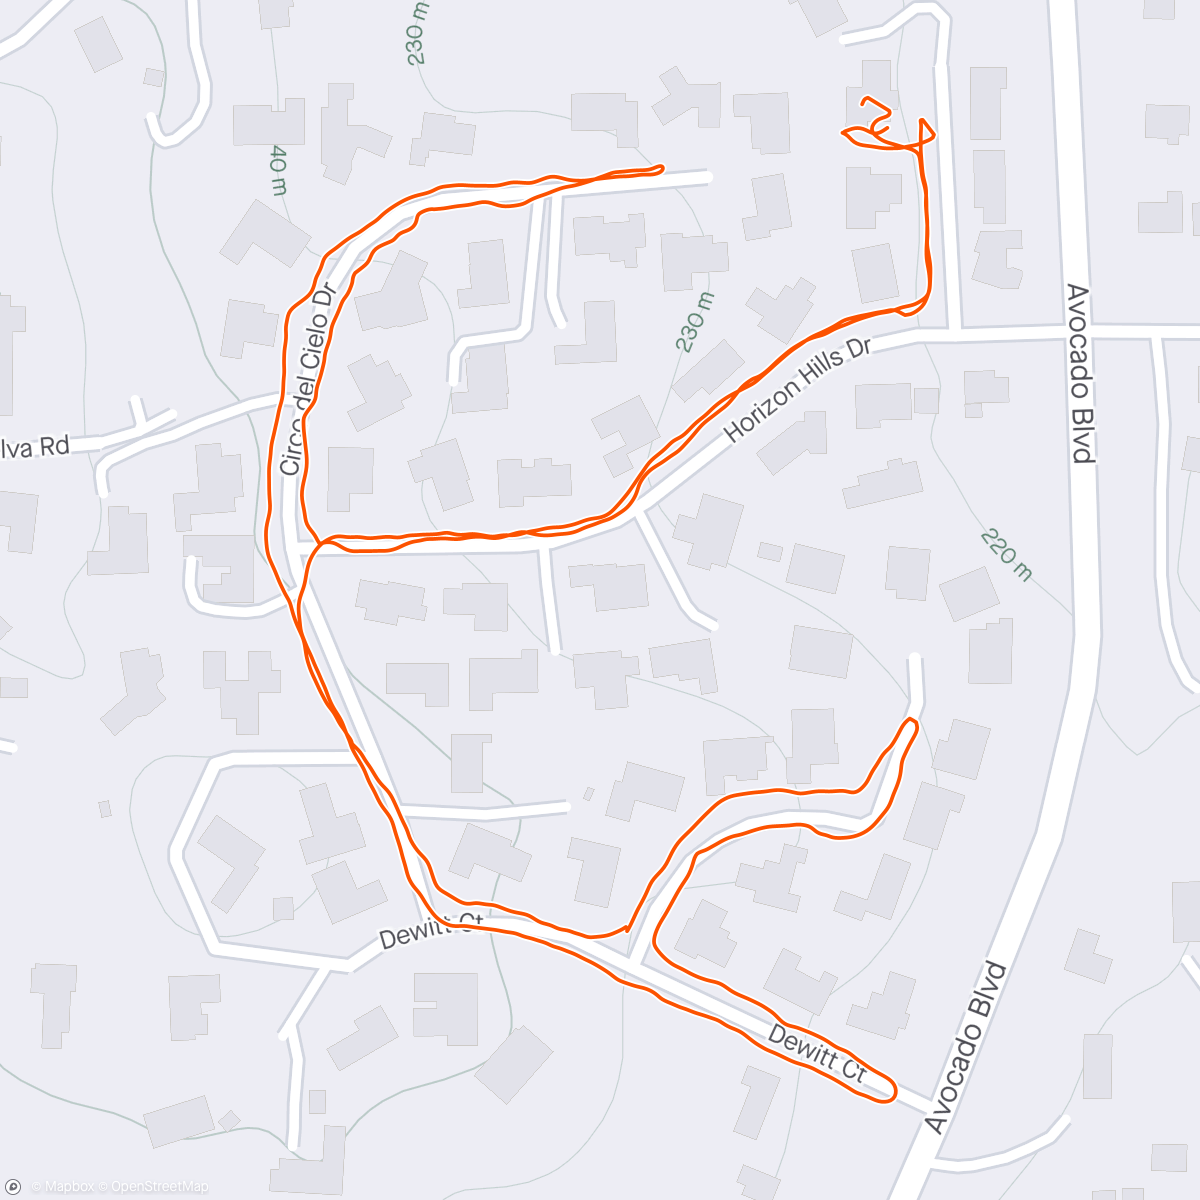 「solo neighborhood vetsed walk」活動的地圖